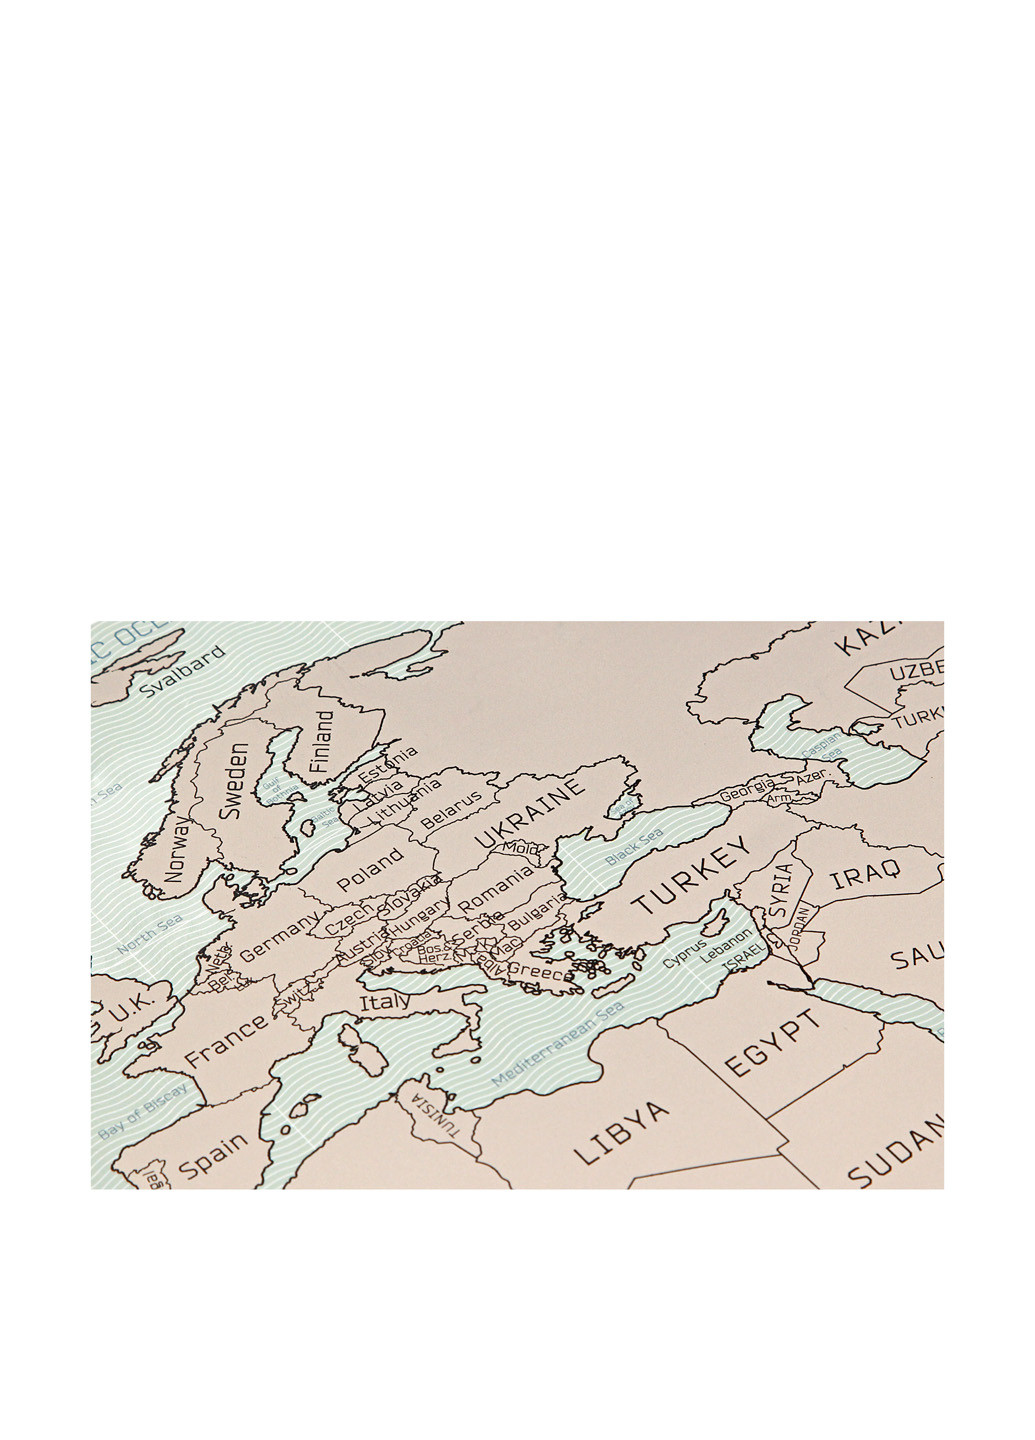 Скретч карта мира на английском языке, 880х520 мм UFT (27688207)